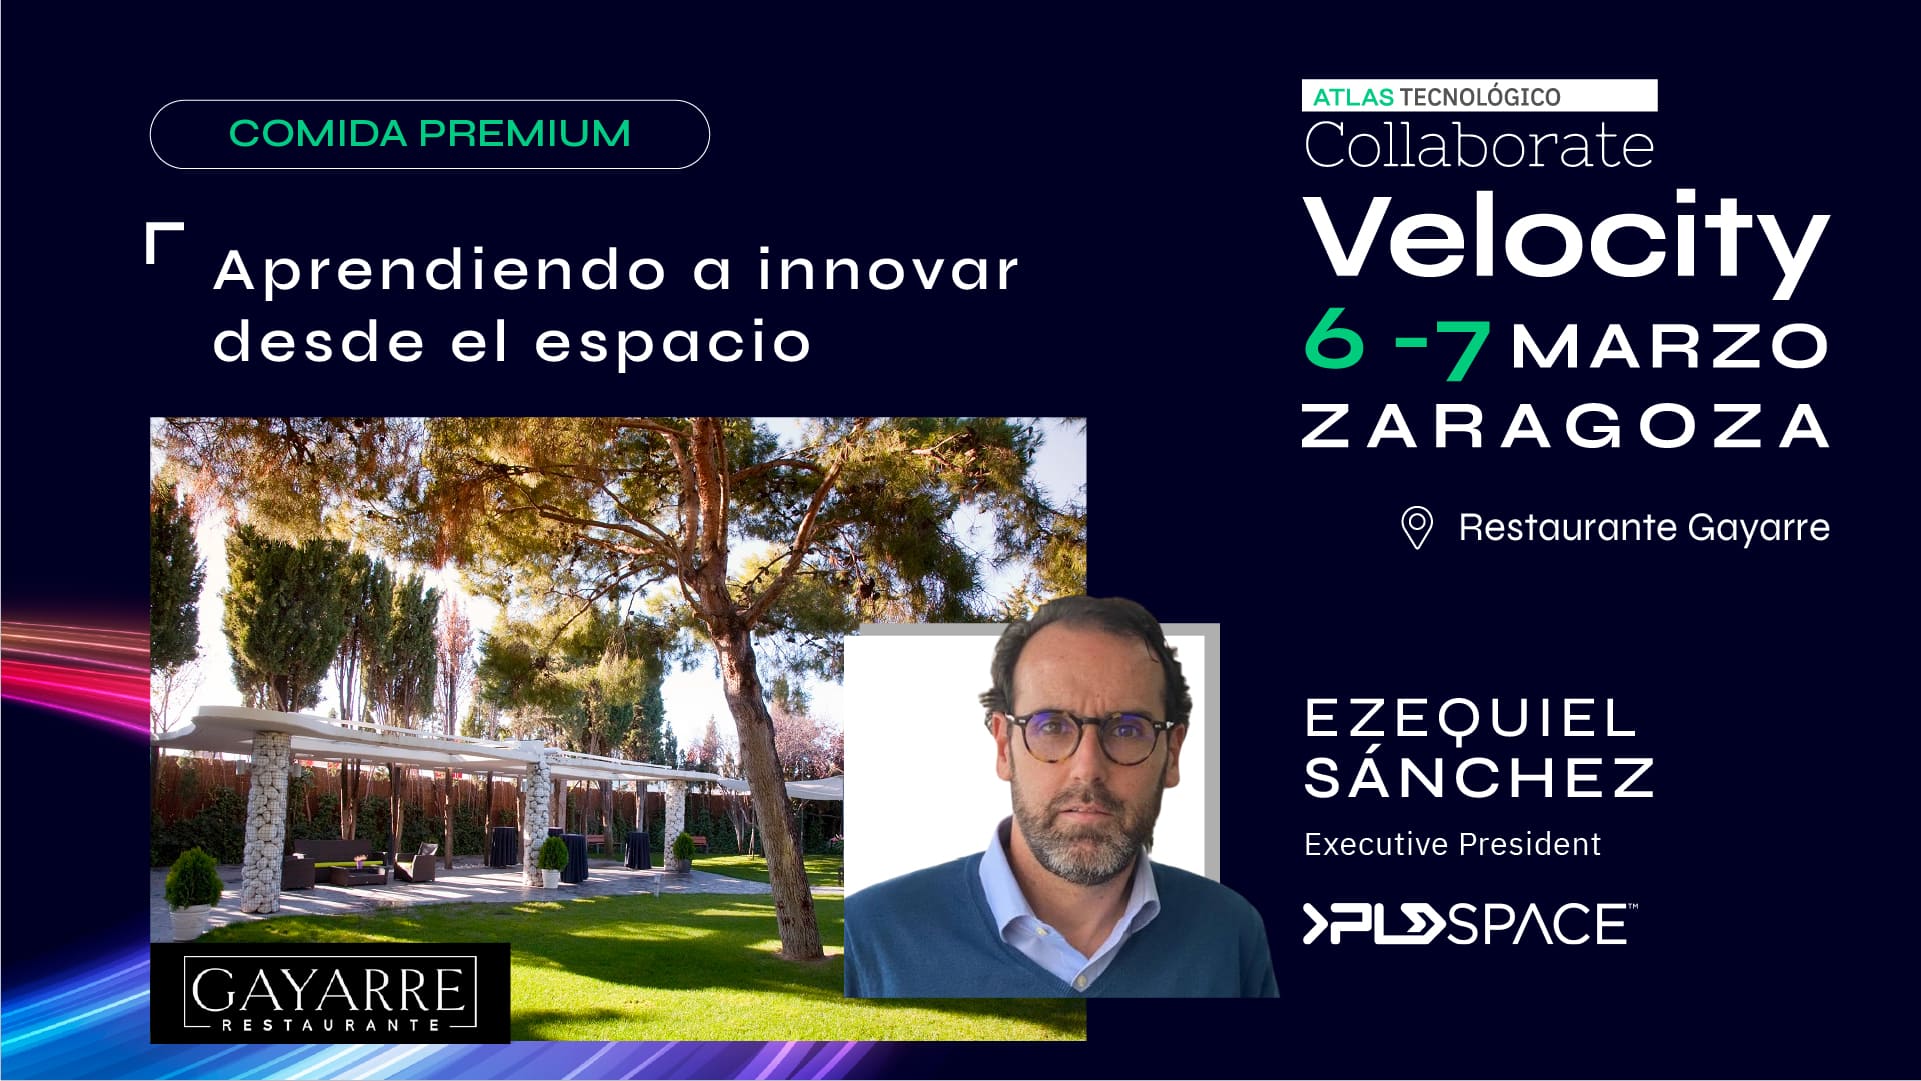 El presidente de PLD Space, Ezequiel Sánchez, protagoniza la Comida Premium del Collaborate Zaragoza